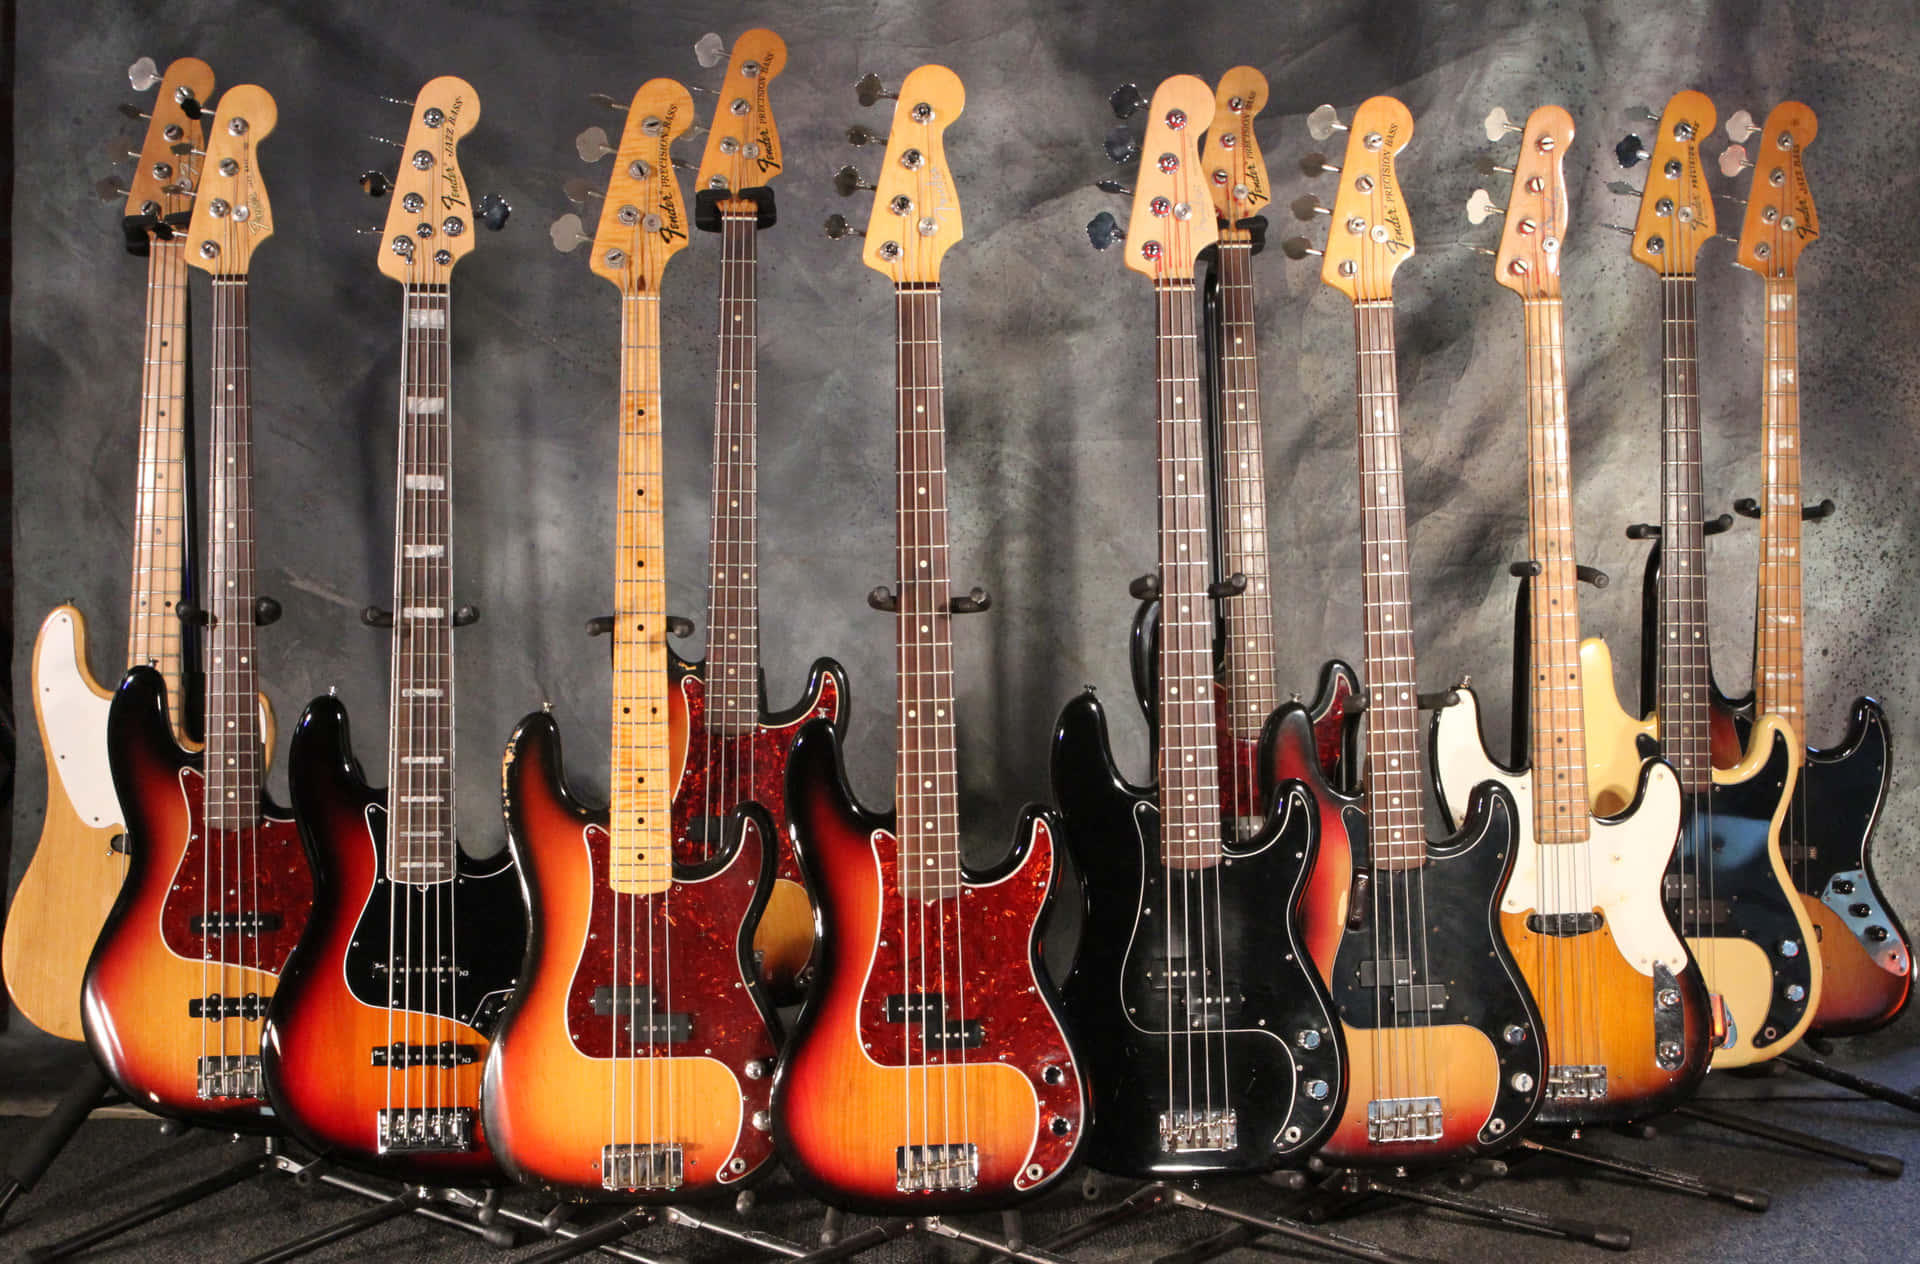 Bass Guitar Wooden Collection Desktop Wallpaper